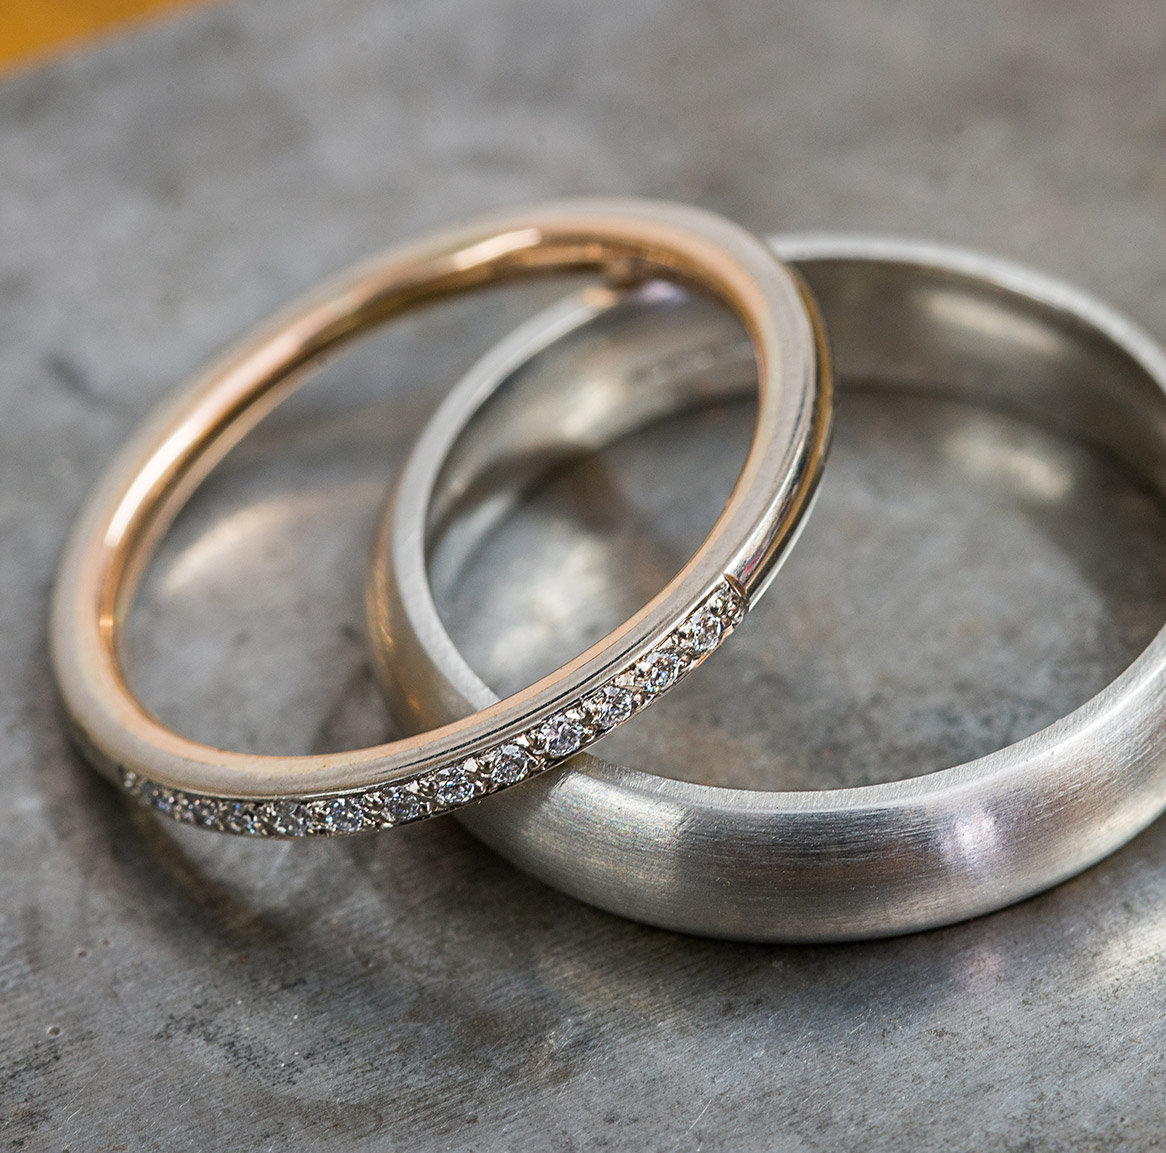 Bespoke custom engagement rings in Swindon